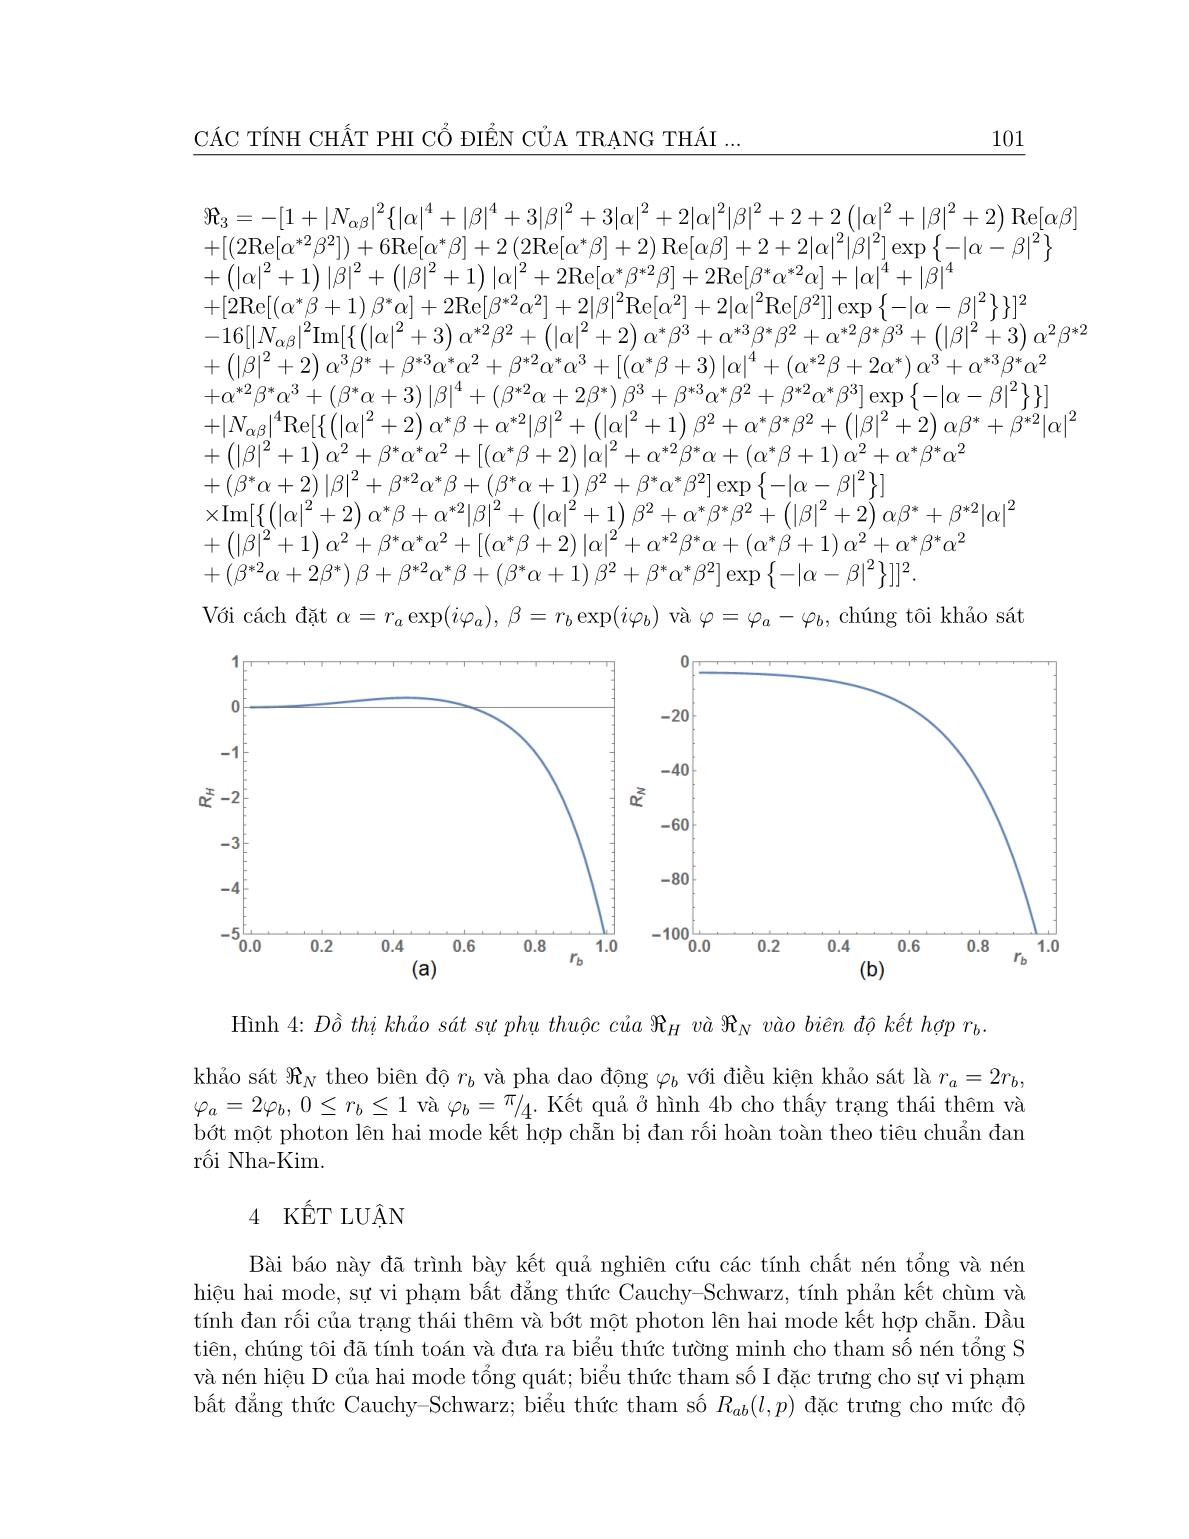 Các tính chất phi cổ điển của trạng thái thêm và bớt một photon lên hai mode kết hợp chẵn trang 9